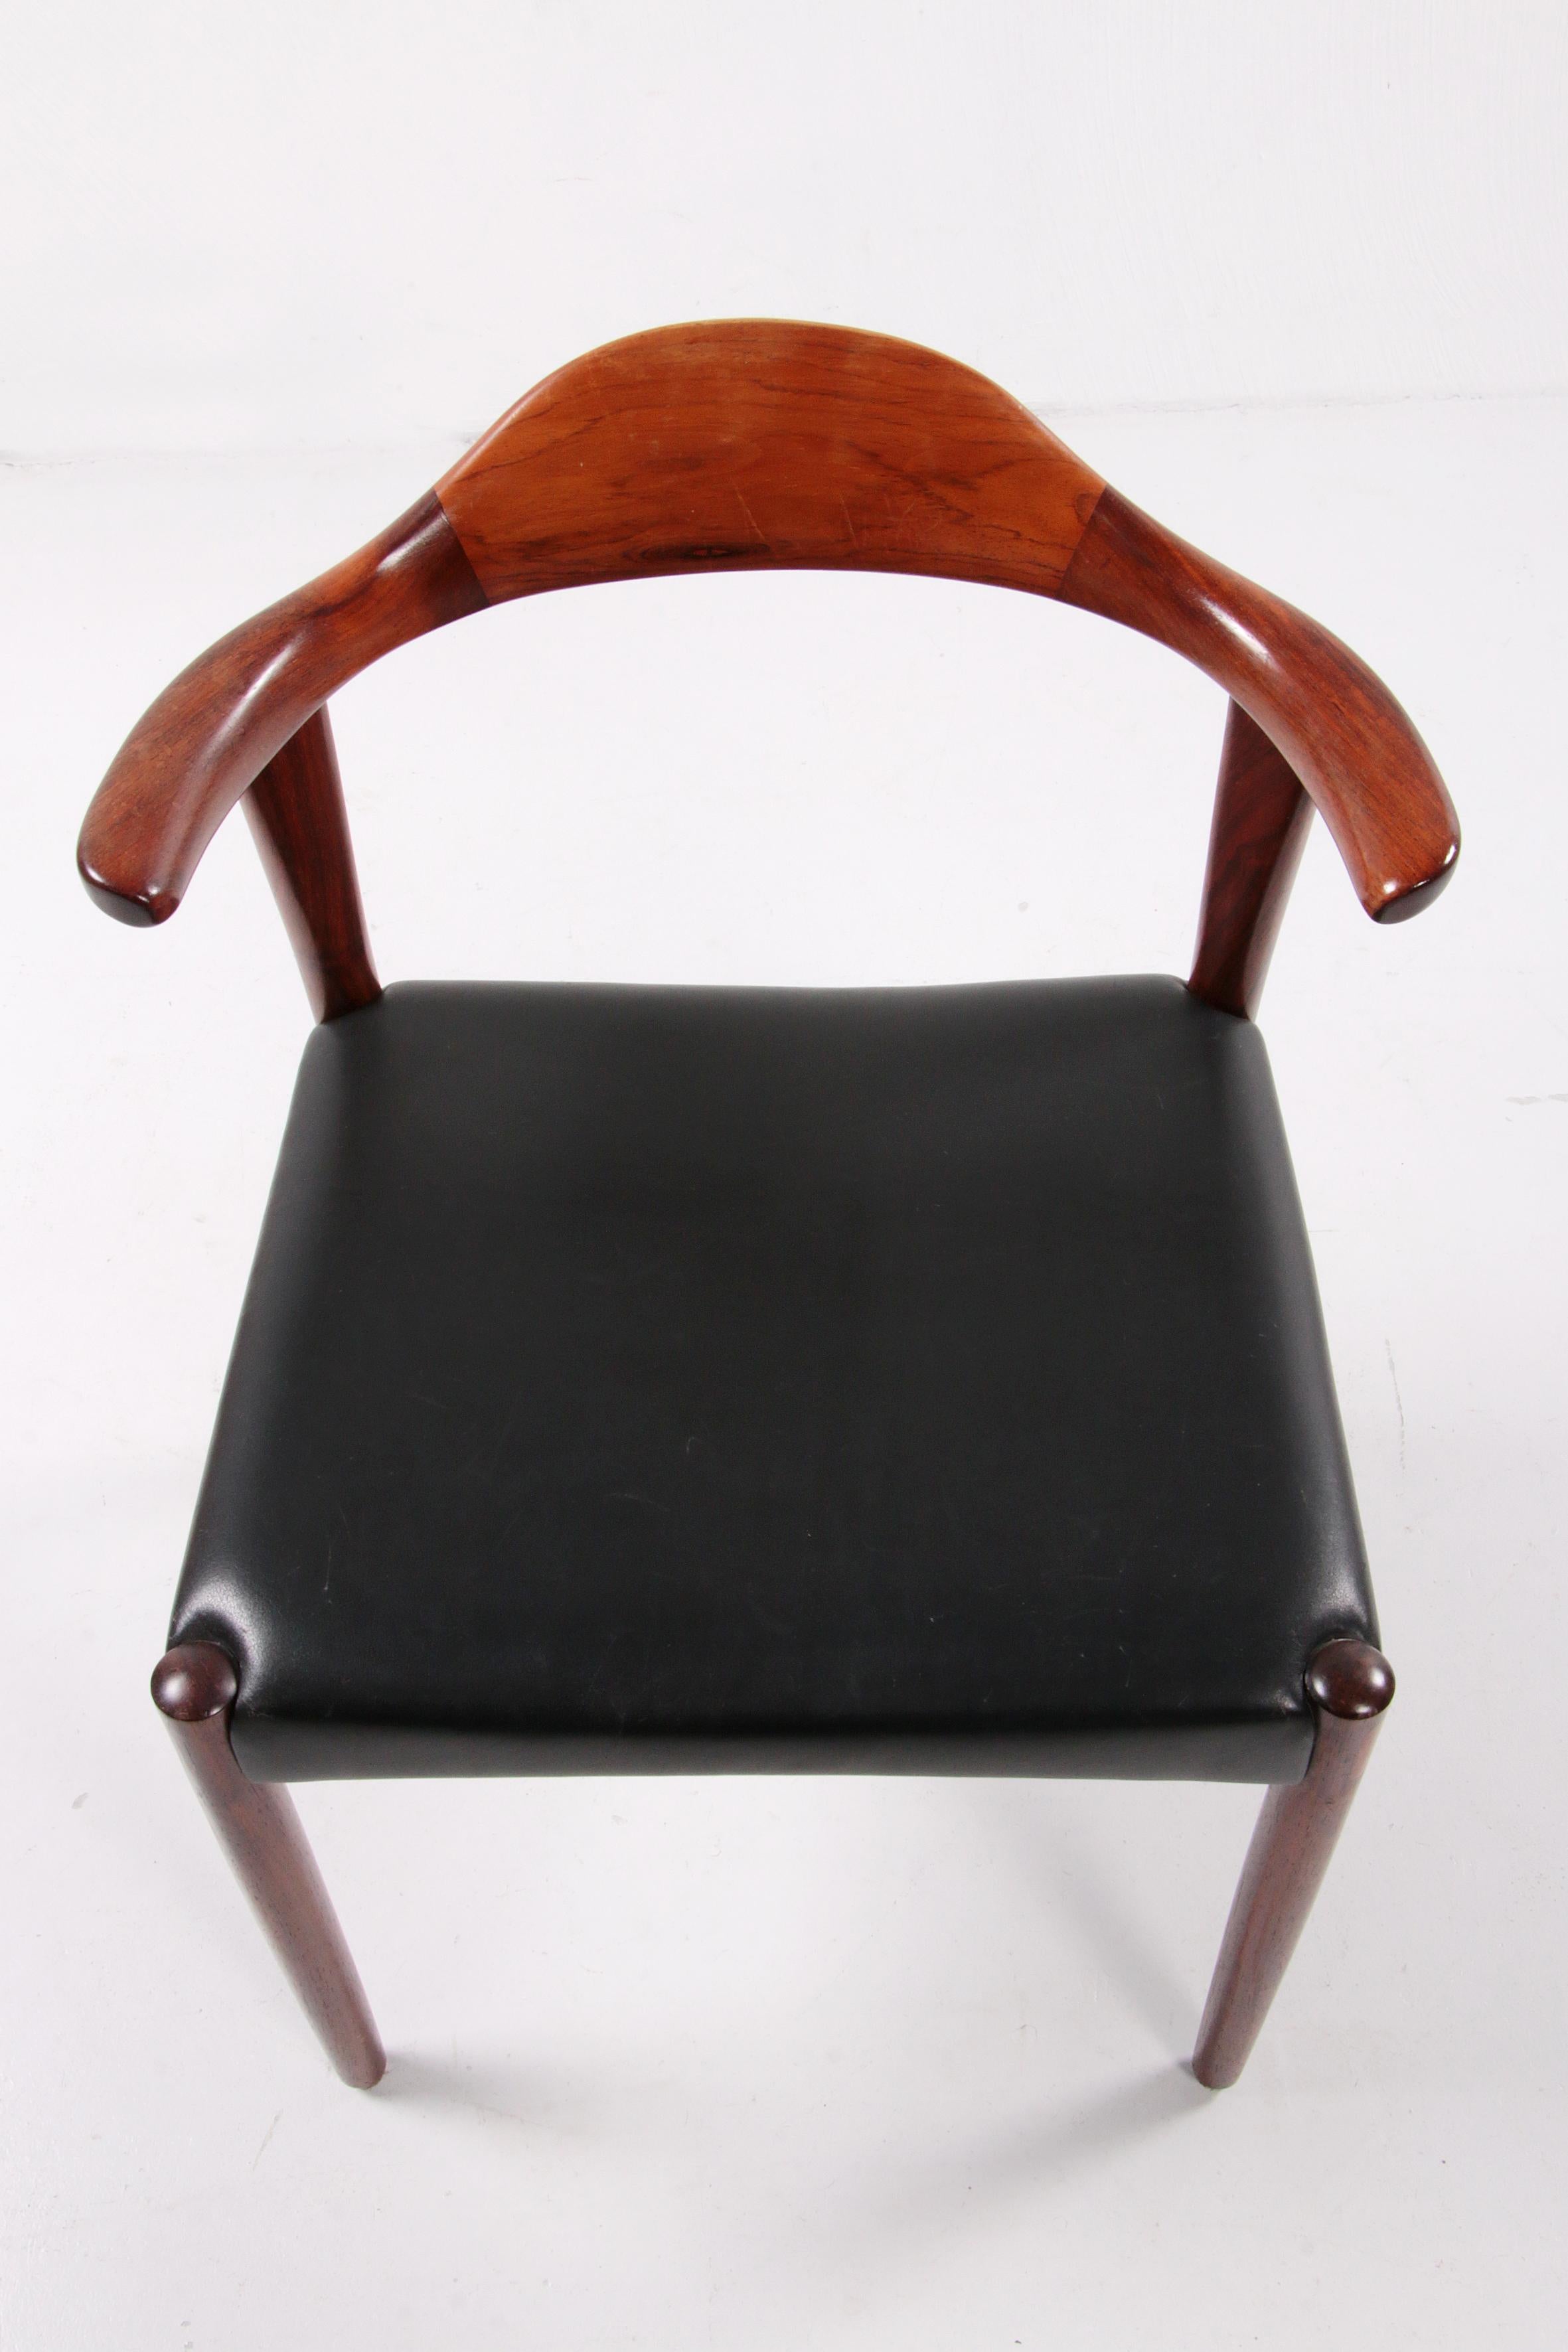 Jacob Hermann Dark Wood Dining Room Chairs Randers Mobelfabriek, 1965 For Sale 2